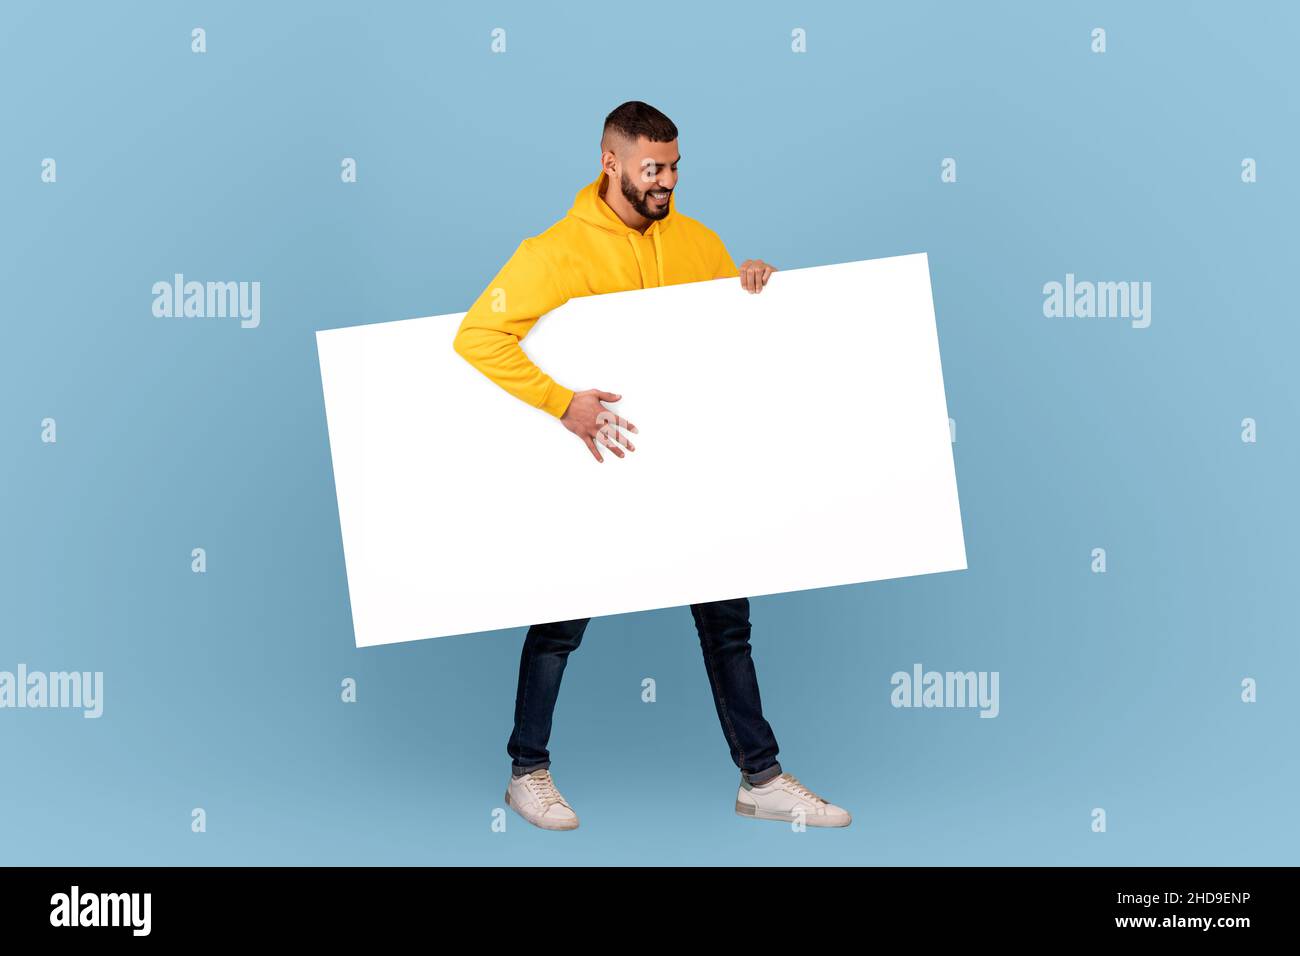 Homme arabe excité marchant avec un écriteau blanc sous le bras sur fond bleu de studio, maquette pour le texte ou le design Banque D'Images